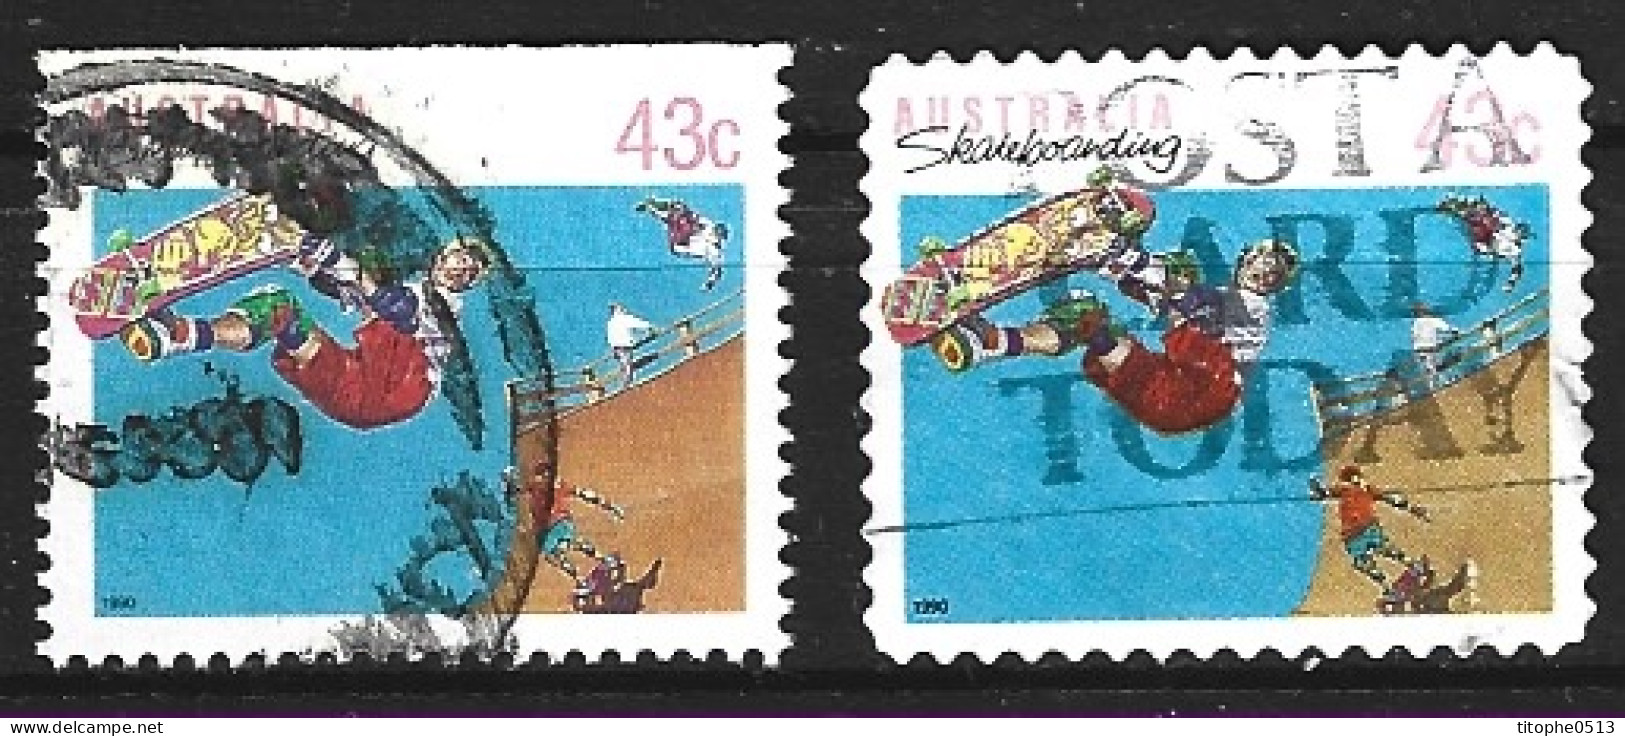 AUSTRALIE. N°1181a + N°1190 Oblitérés De 1990. Skateboard. - Skateboard